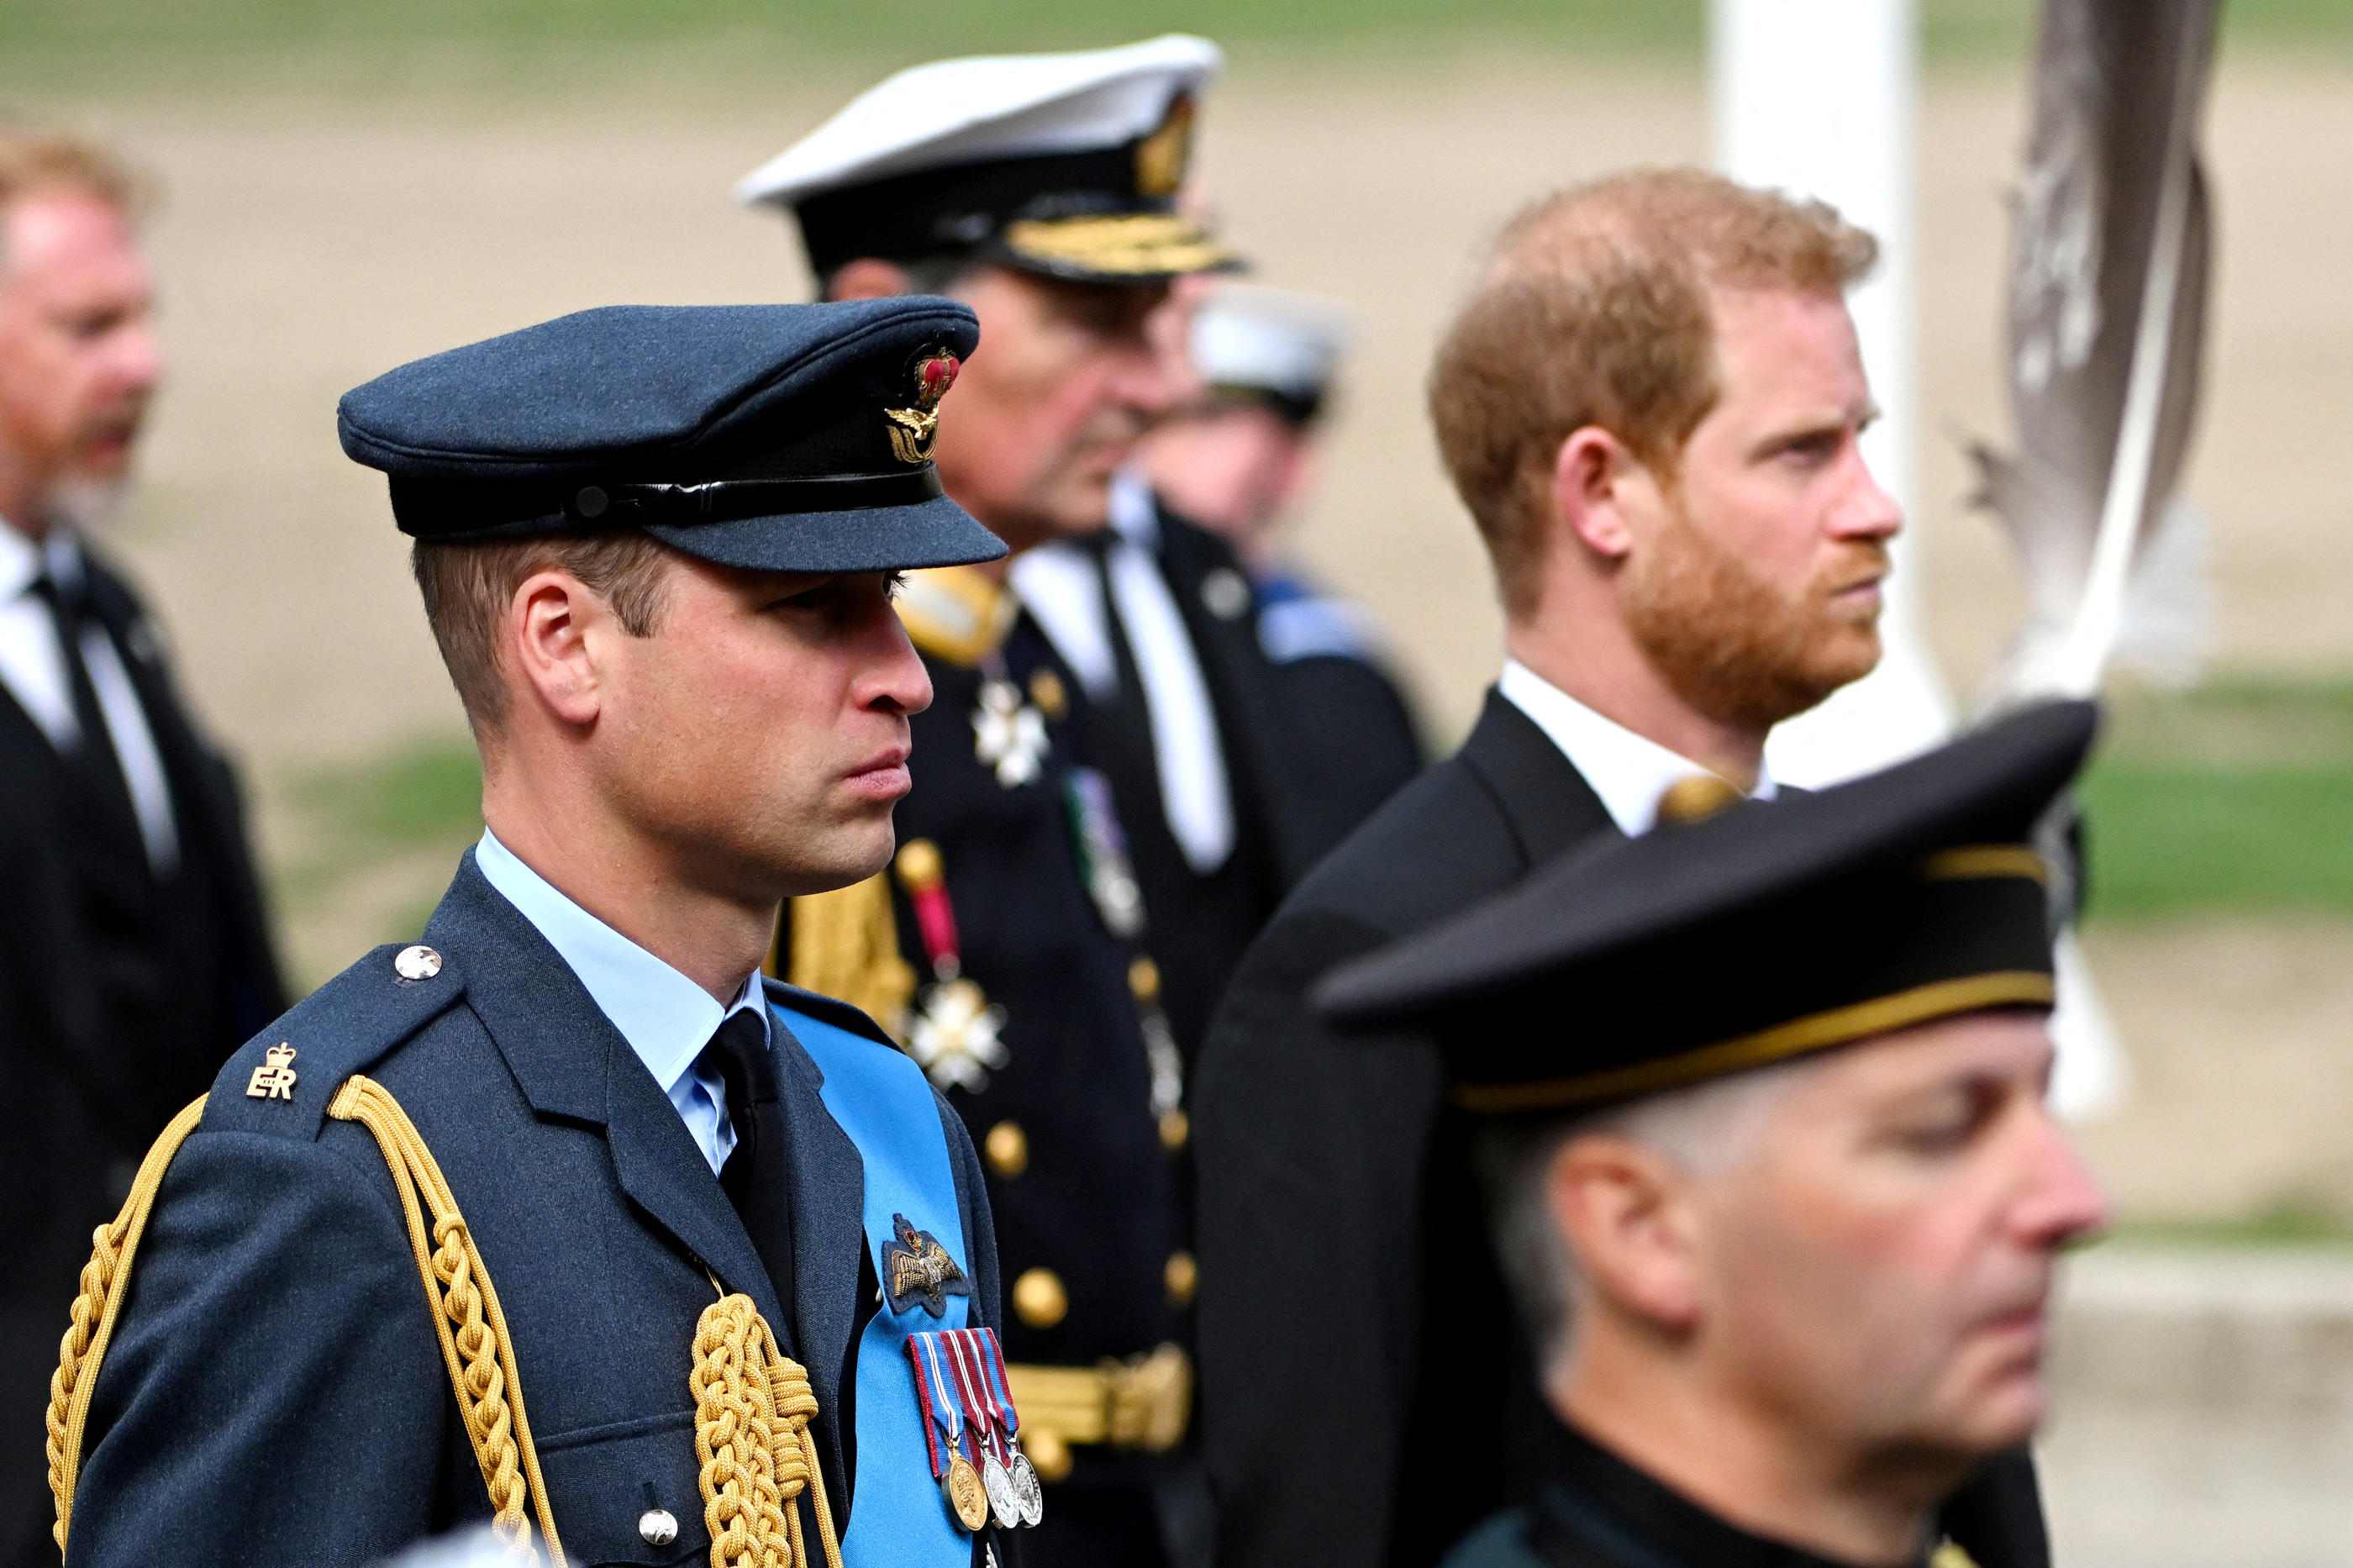 Le prince Harry, qui a quitté ses fonctions au sein de la famille royale, ne portait pas l'uniforme militaire lors des funérailles d'Elizabeth II, contrairement à son frère, le prince William. Jeff Spicer/Pool via REUTERS